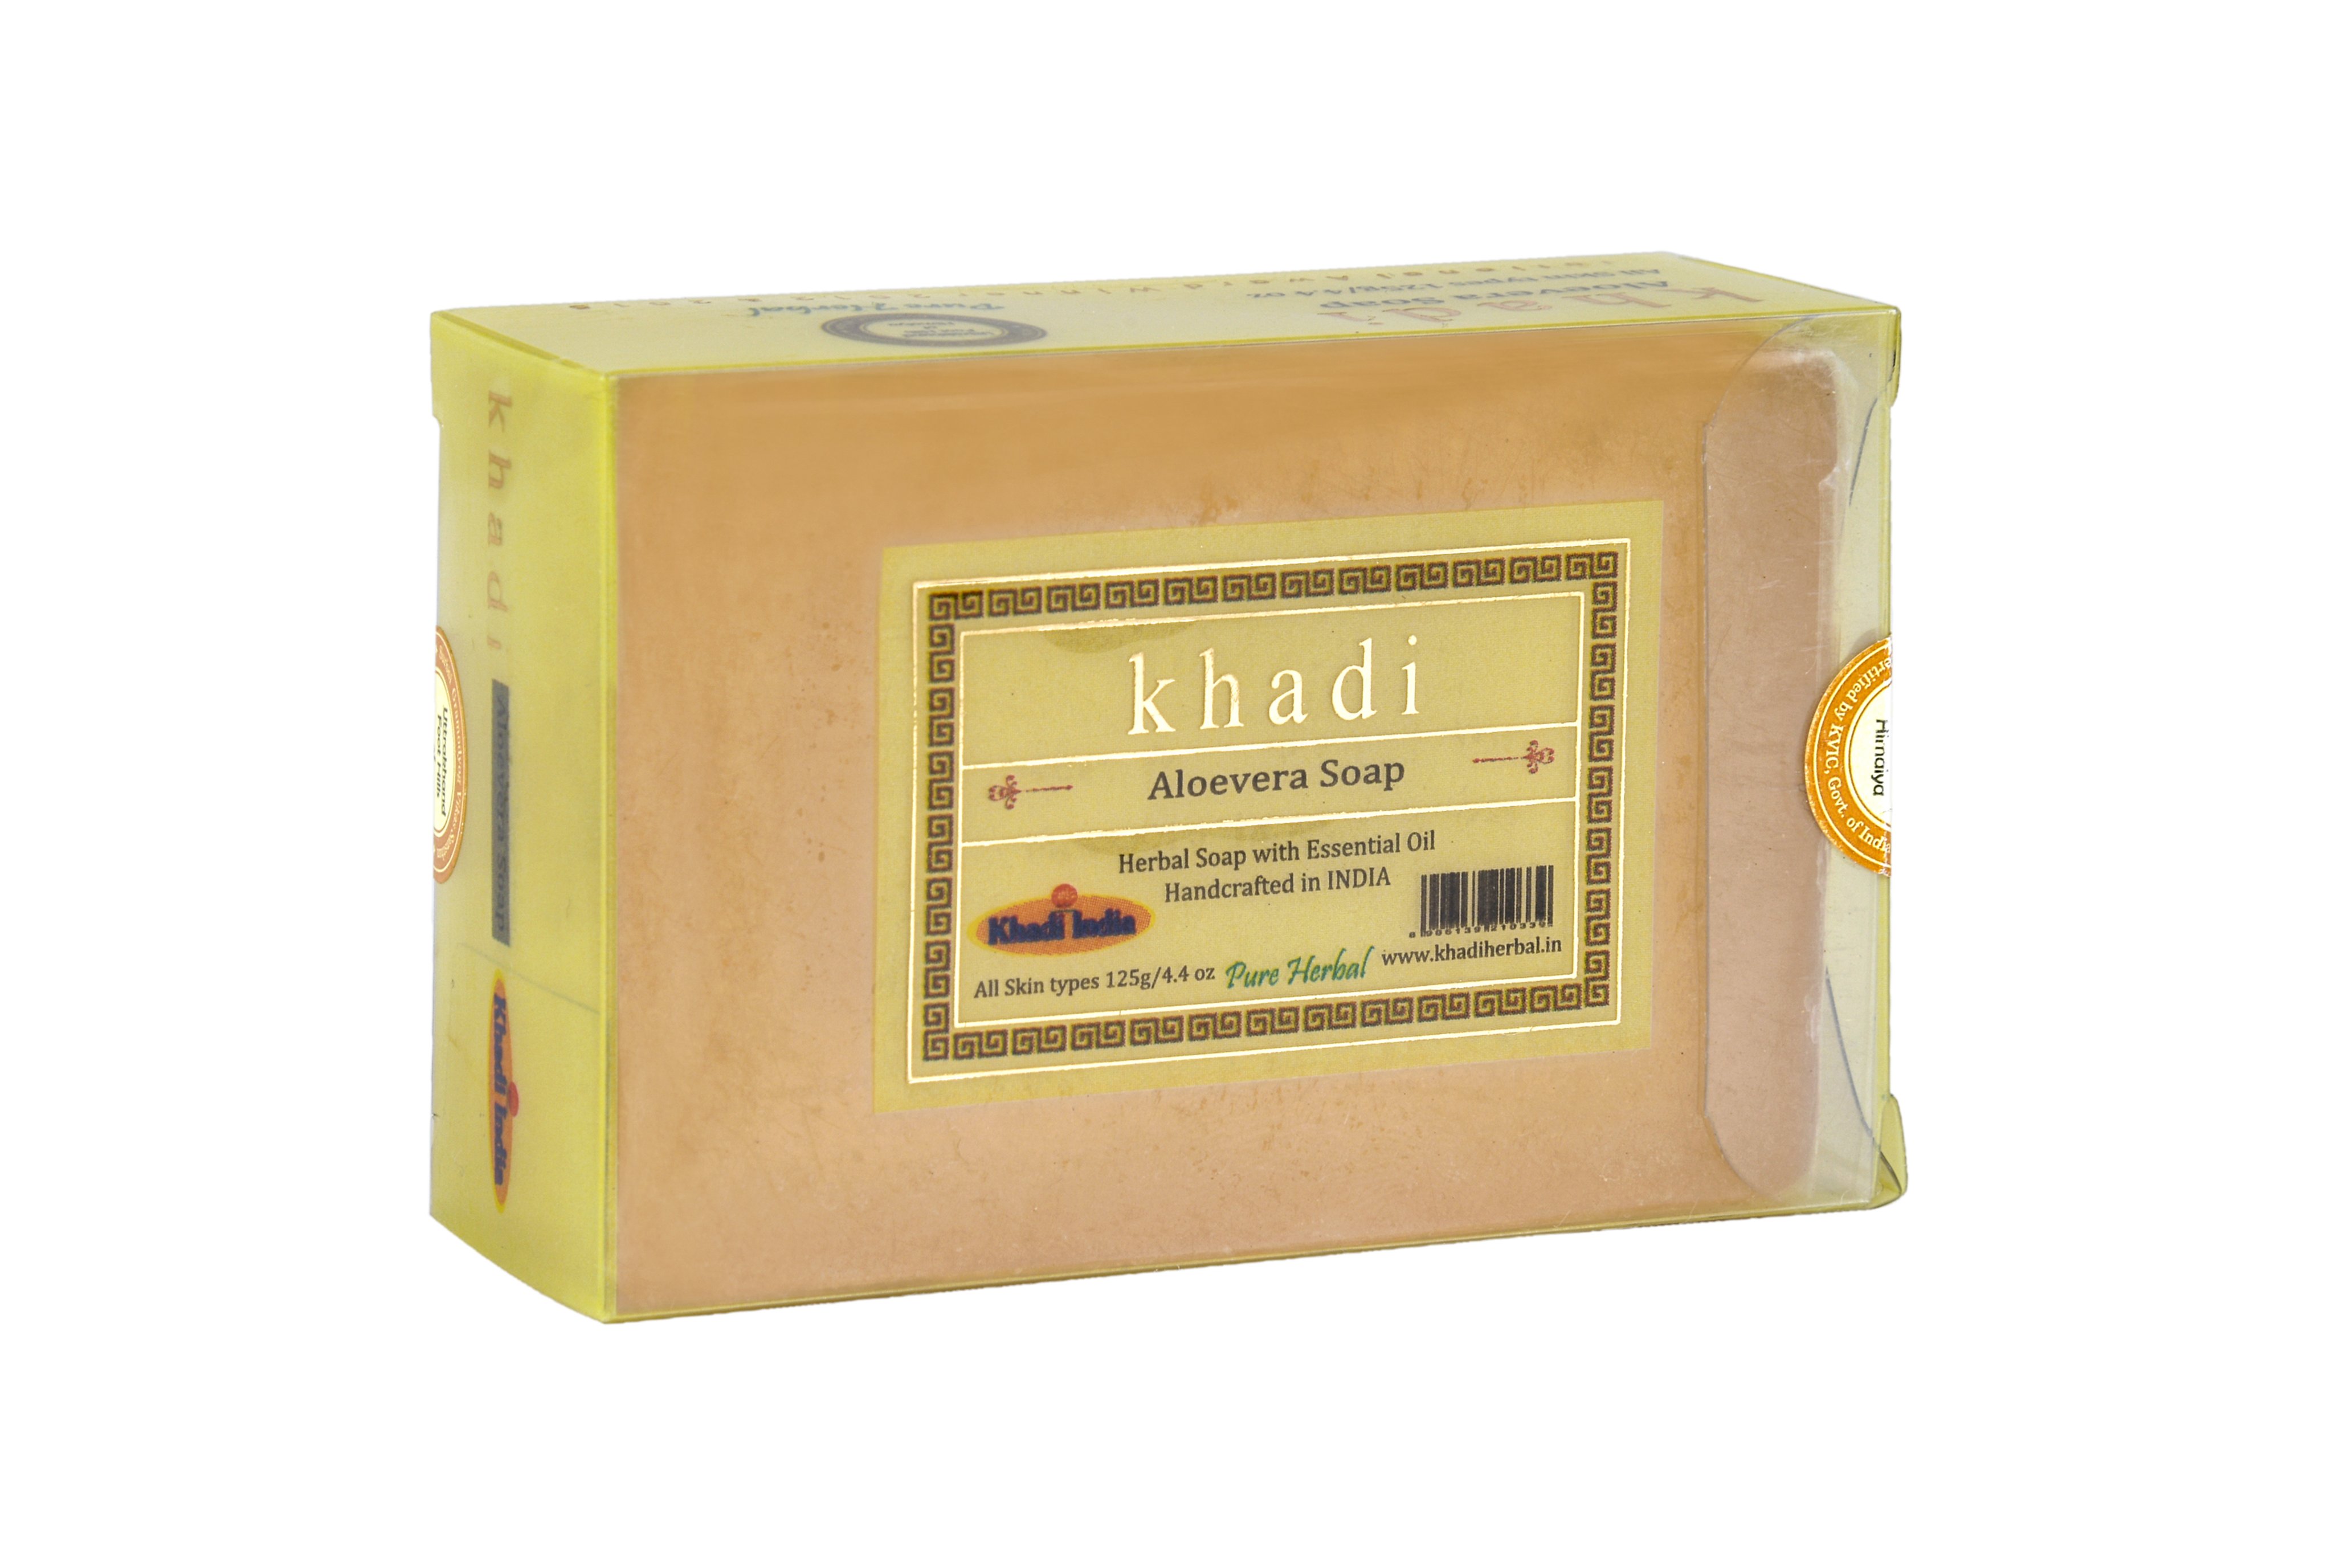 Khadi ALOEVERA SOAP, Khadi India (АЛОЭ ВЕРА МЫЛО ручной работы с эфирными маслами, Кхади Индия), 125 г.